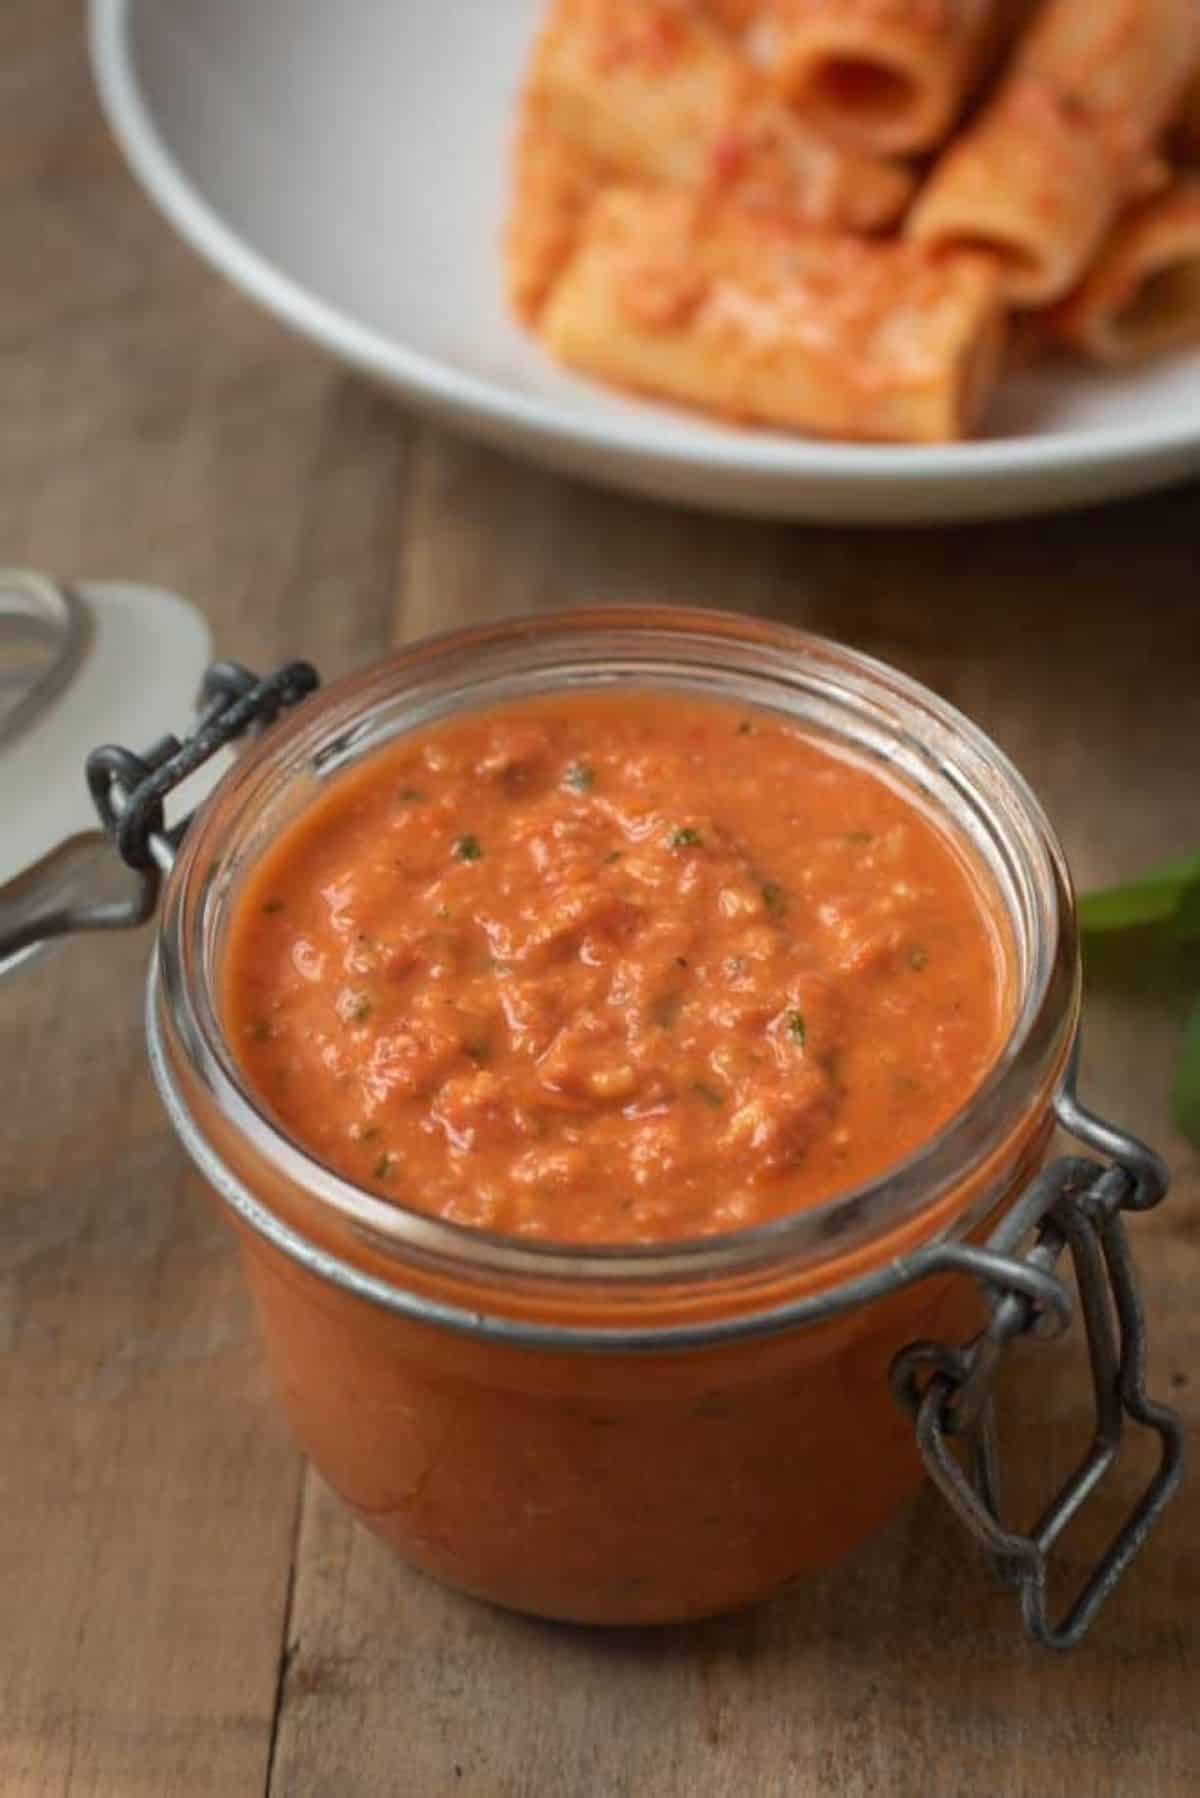 Creamy sicilian tomato pesto sauce in a glass jar.